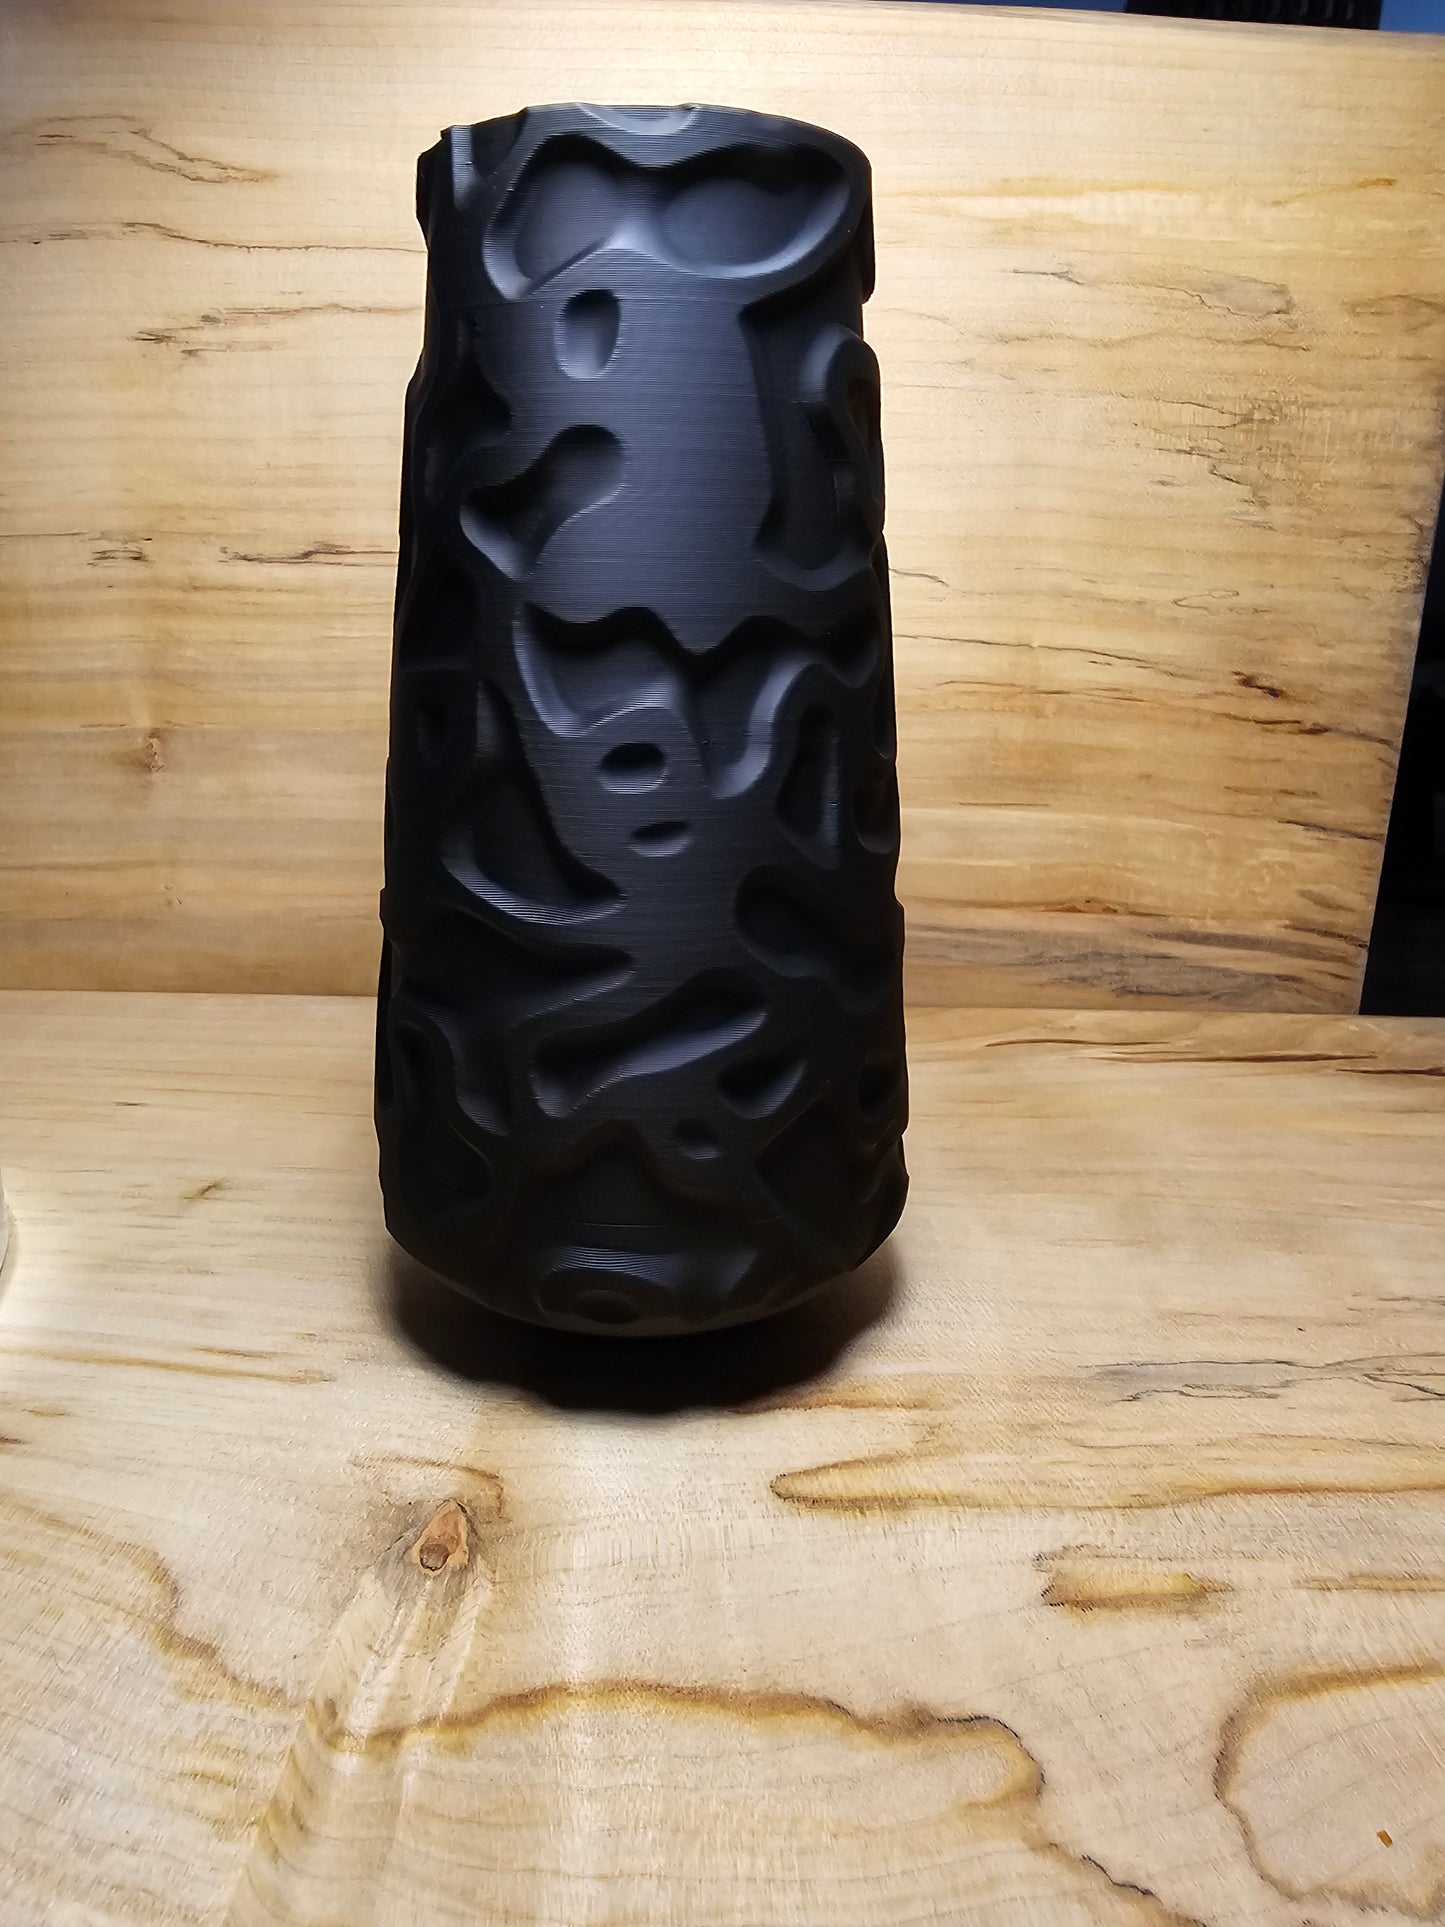 Organic Relief Vase